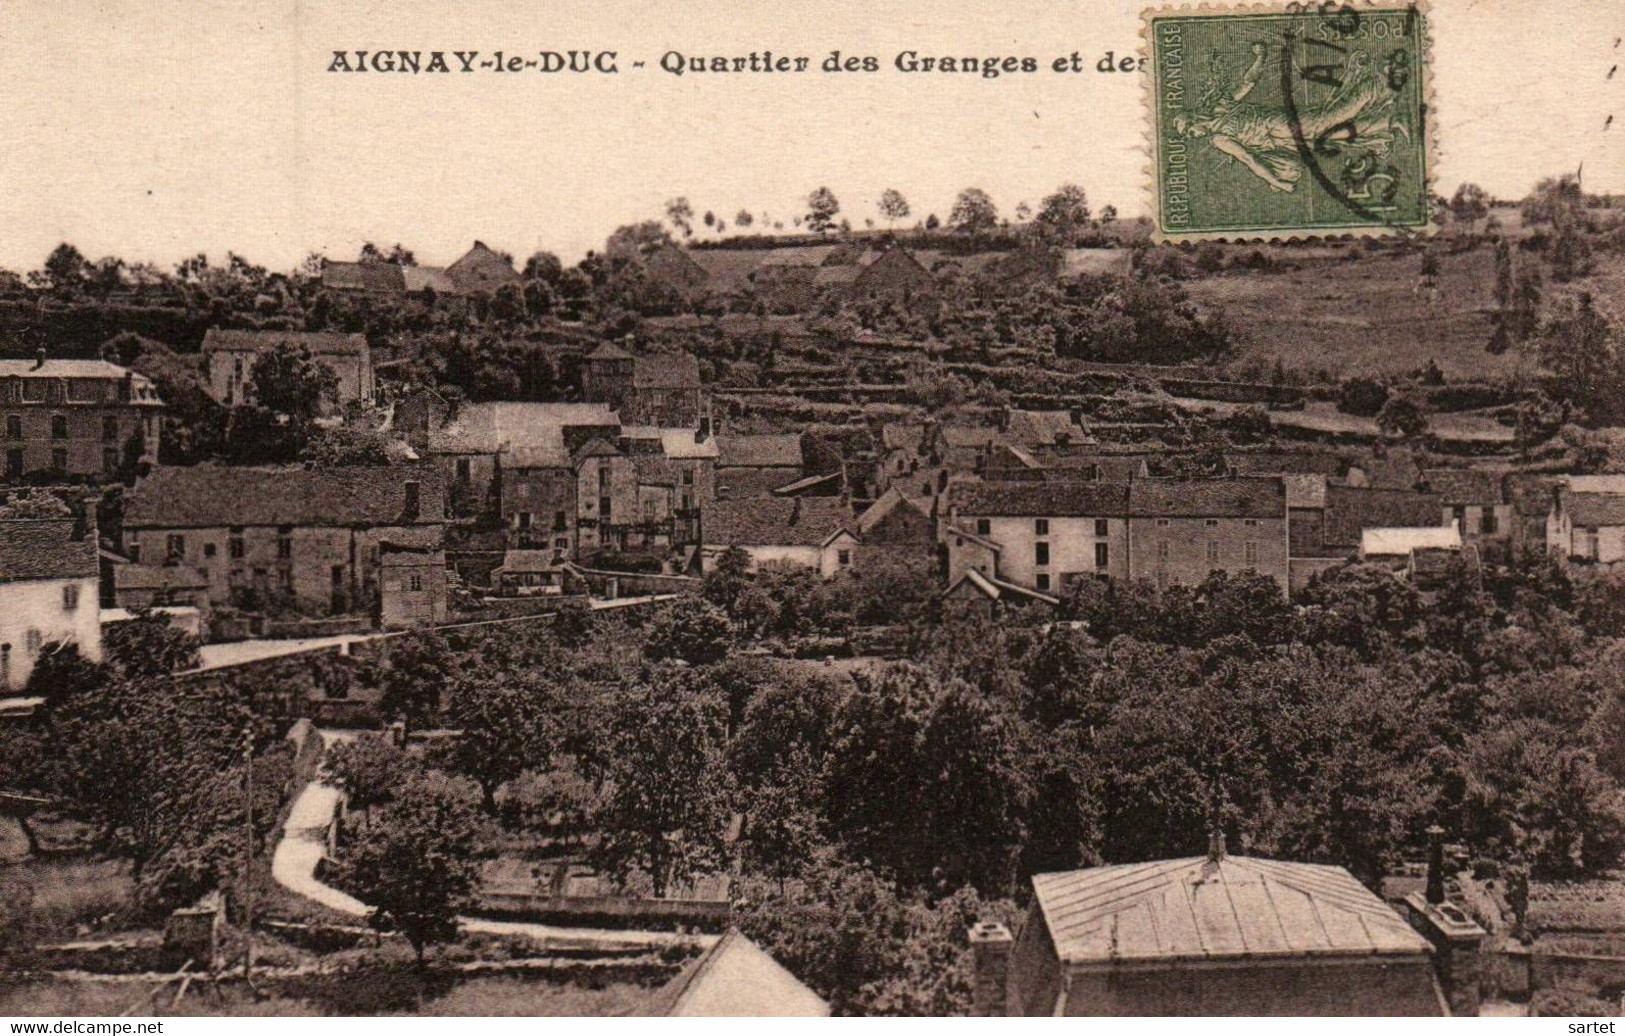 Aignay-le-Duc - Quartier Des Granges - Aignay Le Duc